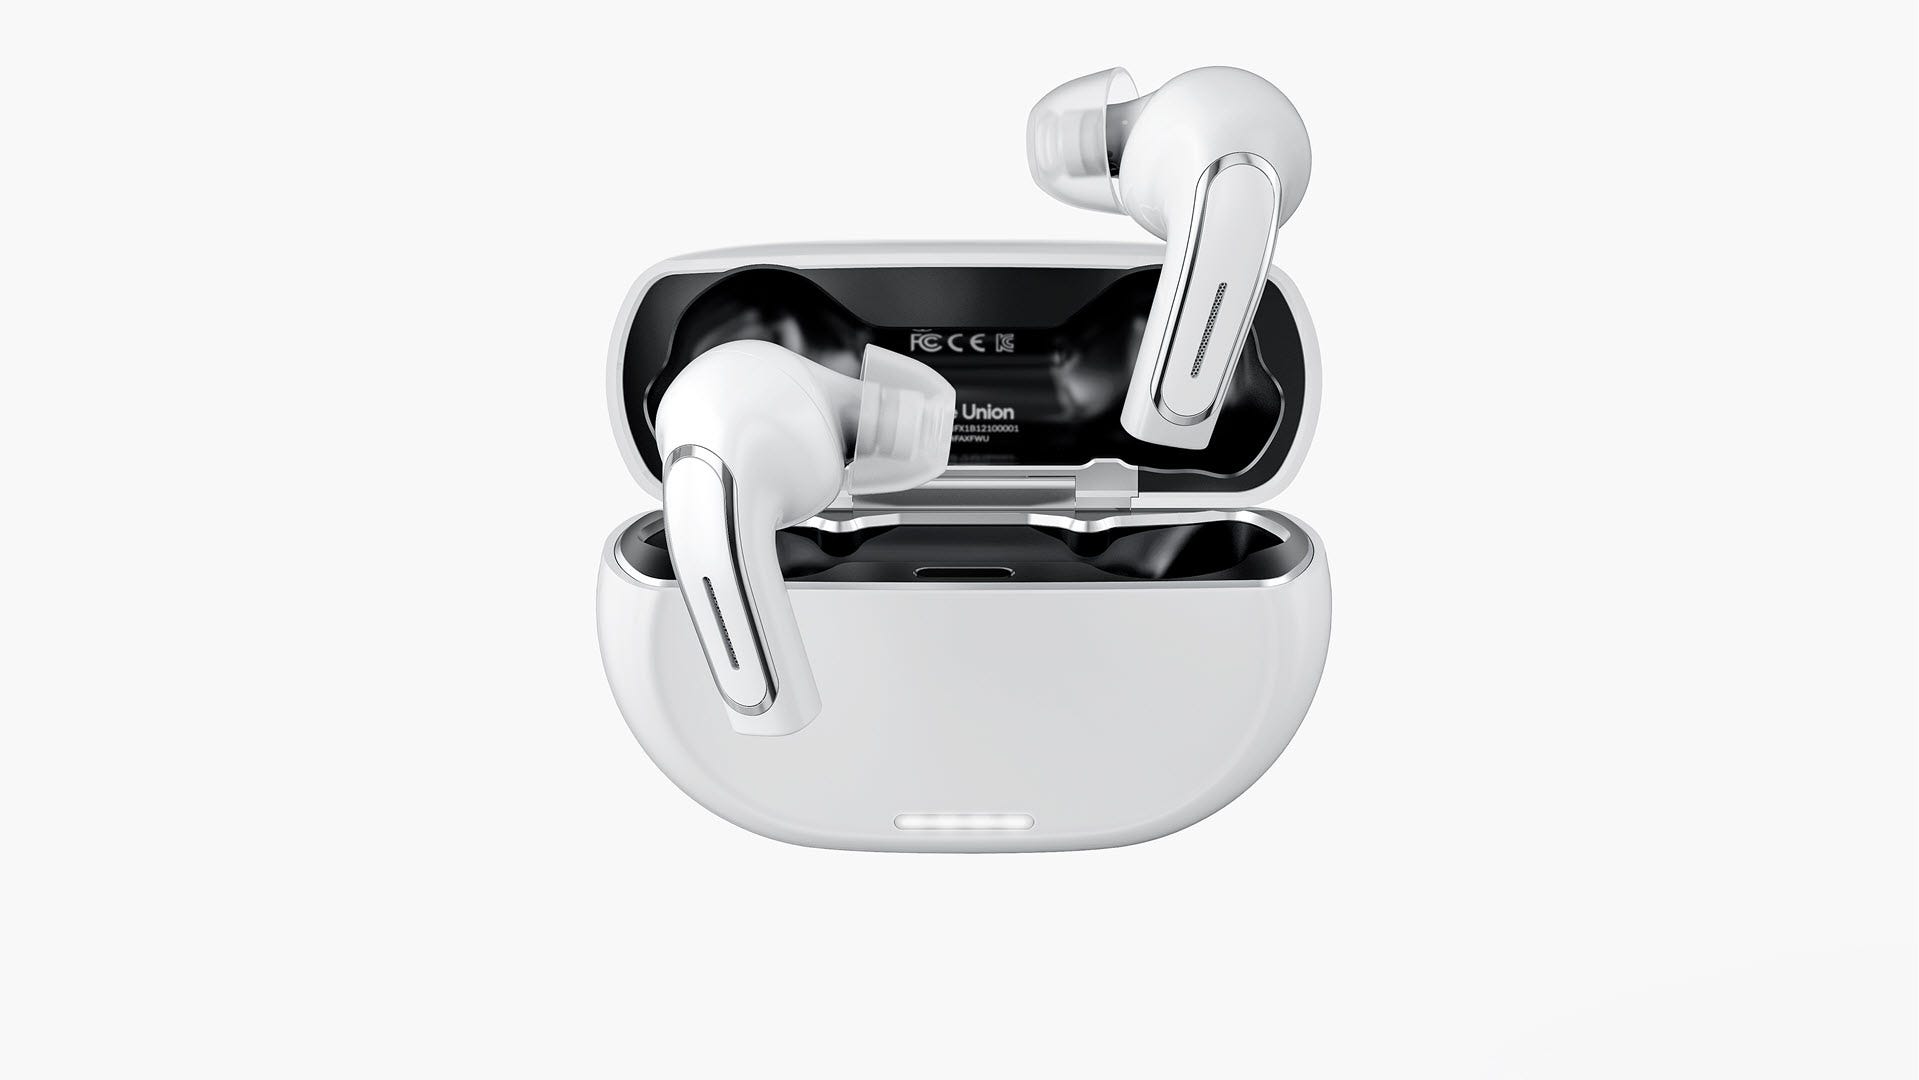 Tai nghe nhét tai Olive Pro kết hợp thiết bị trợ thính với tai nghe không dây thực sự